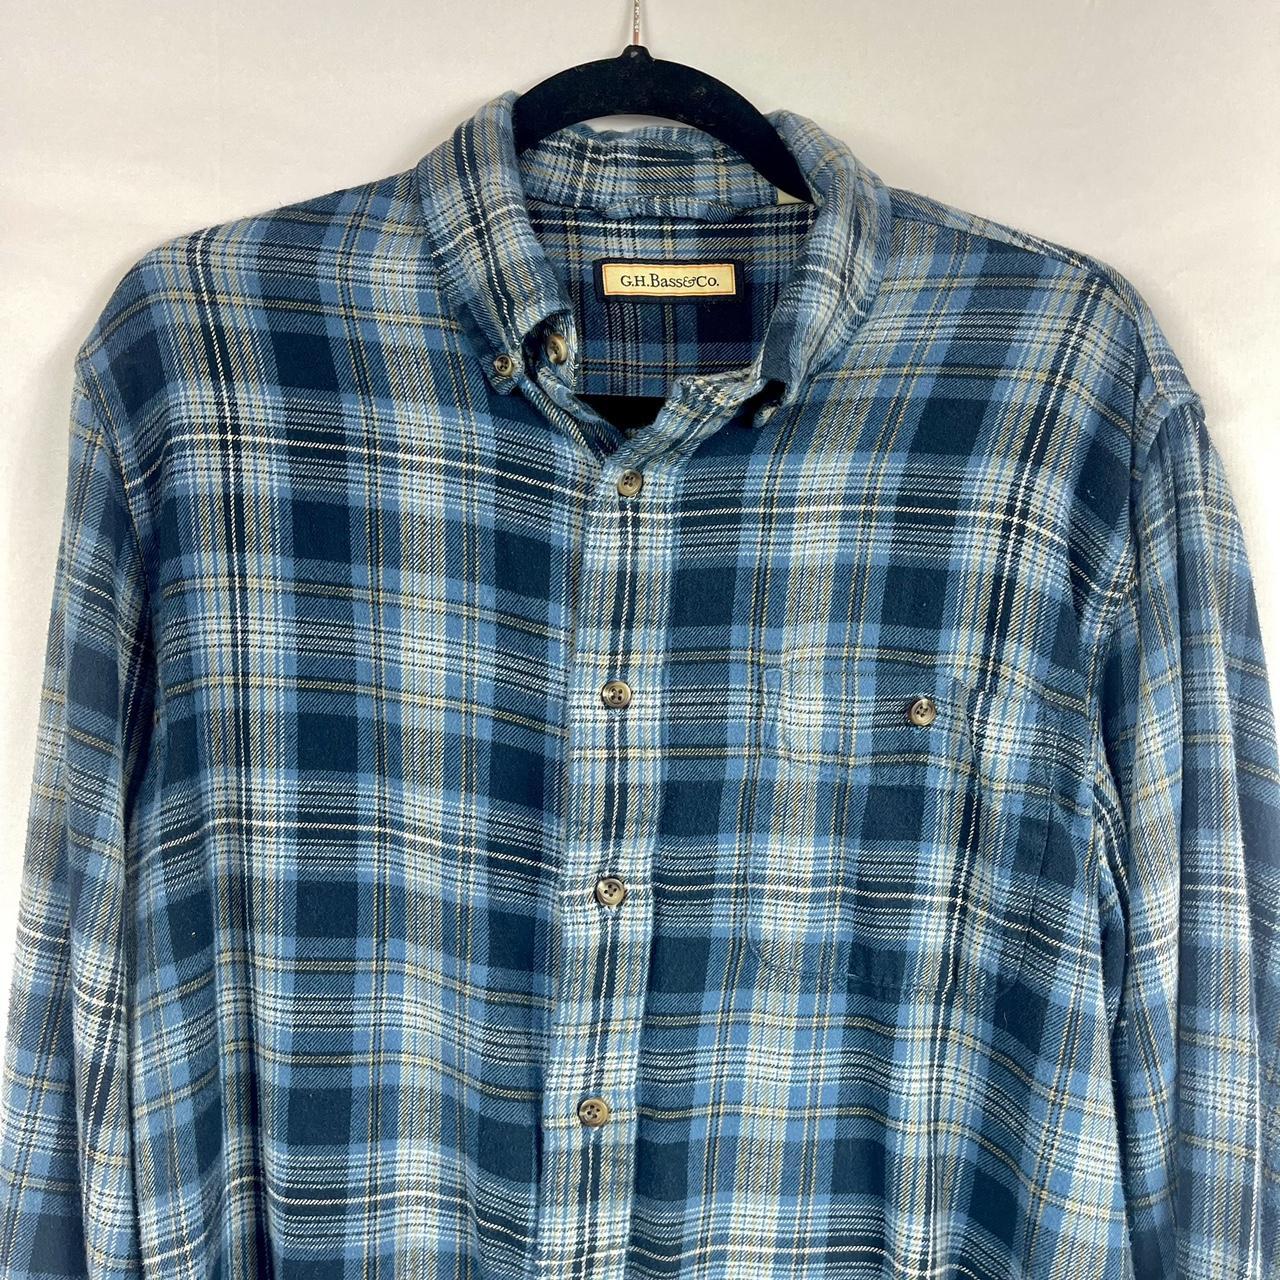 G.H. Bass & Co., Shirts, G H Bass Co Flannel Mens Shirt Medium